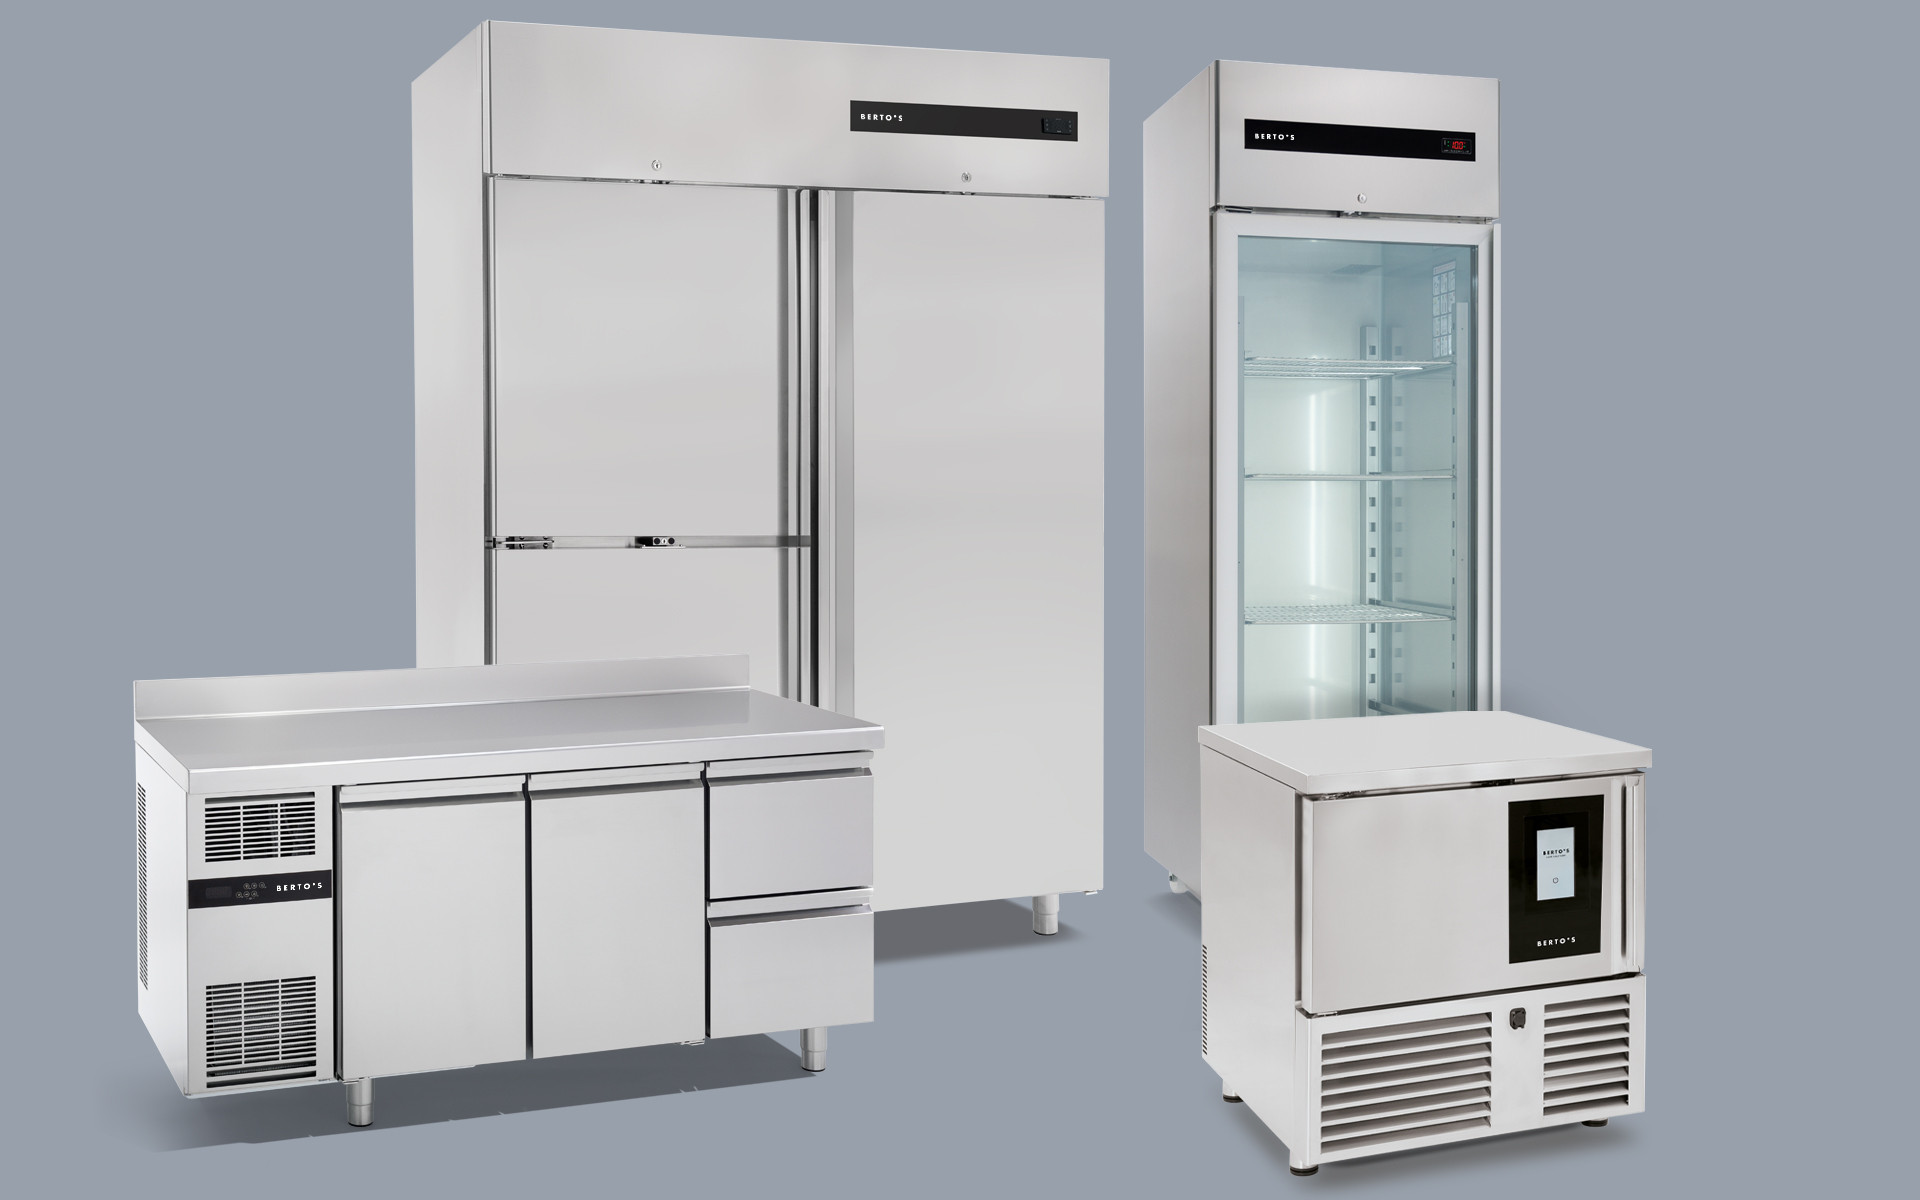 Refrigeration for restaurants